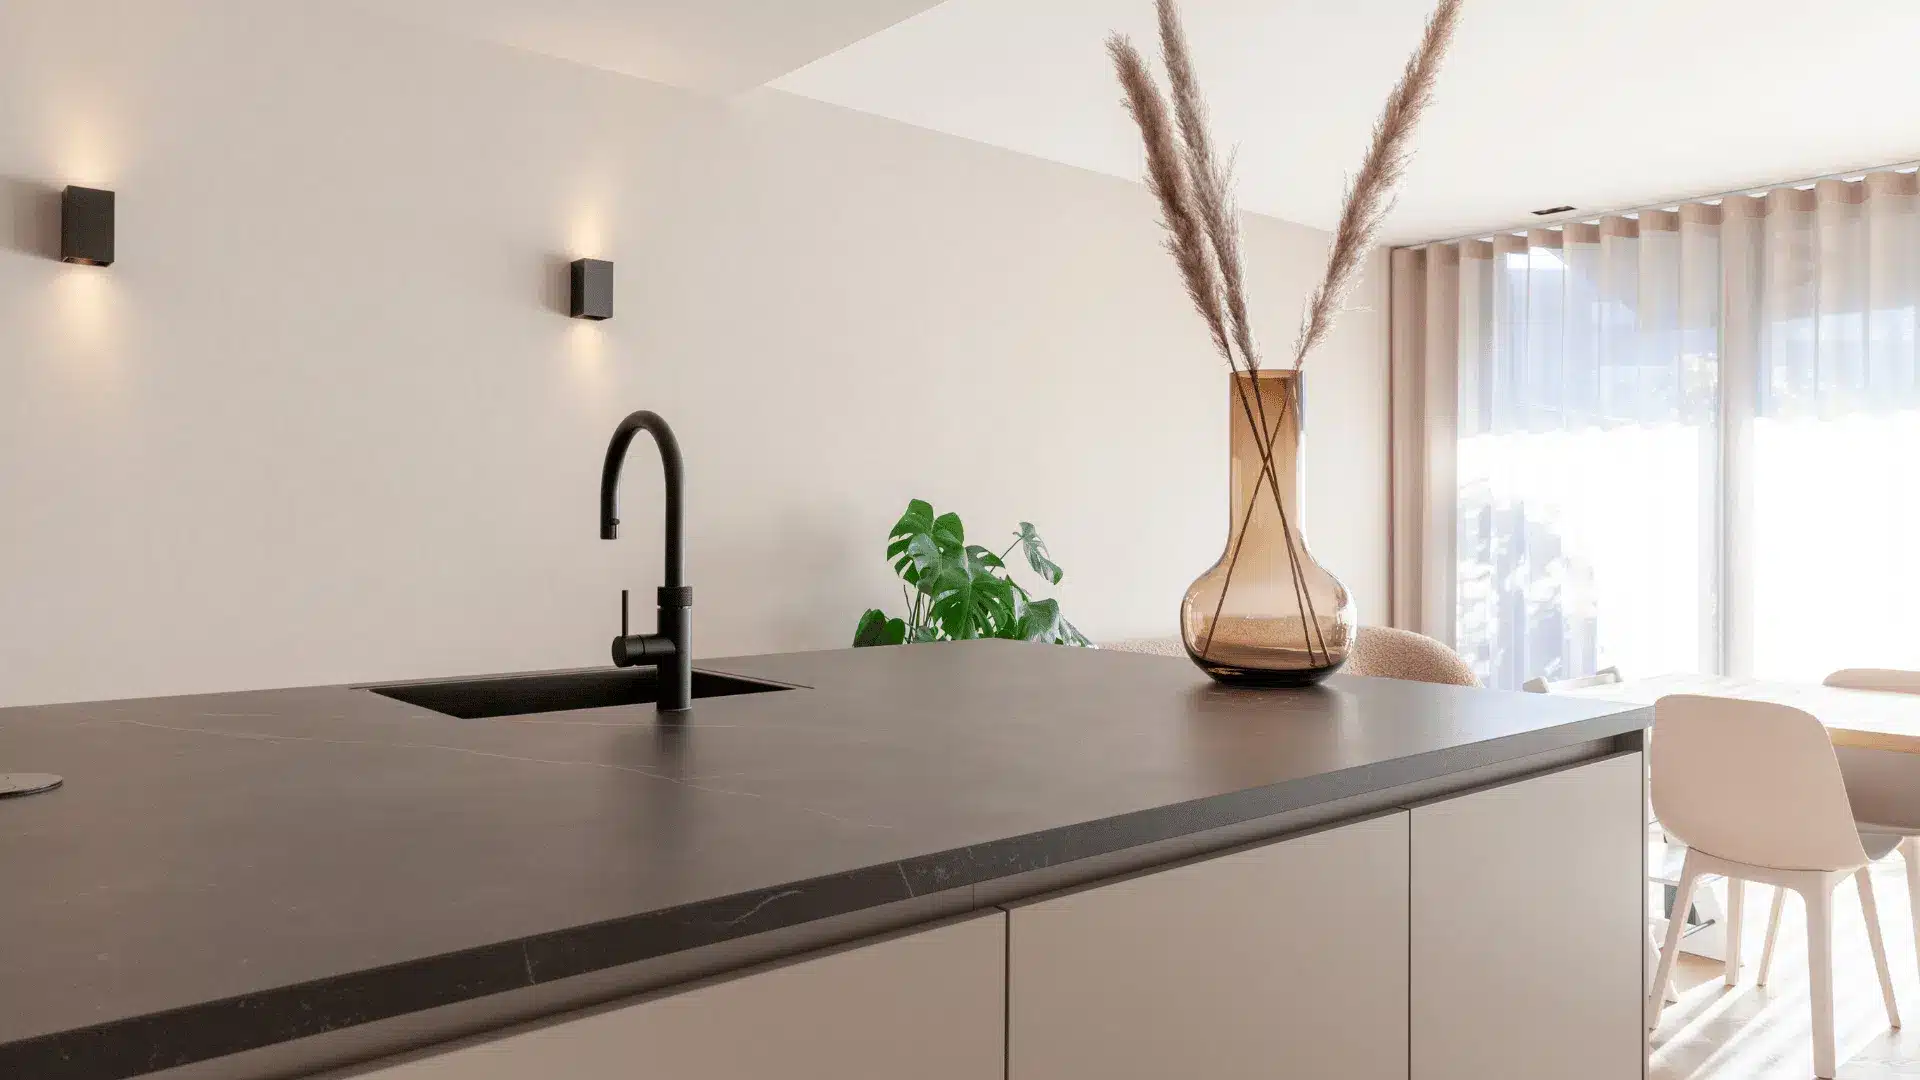 minimalistische keuken modern zonder poespas